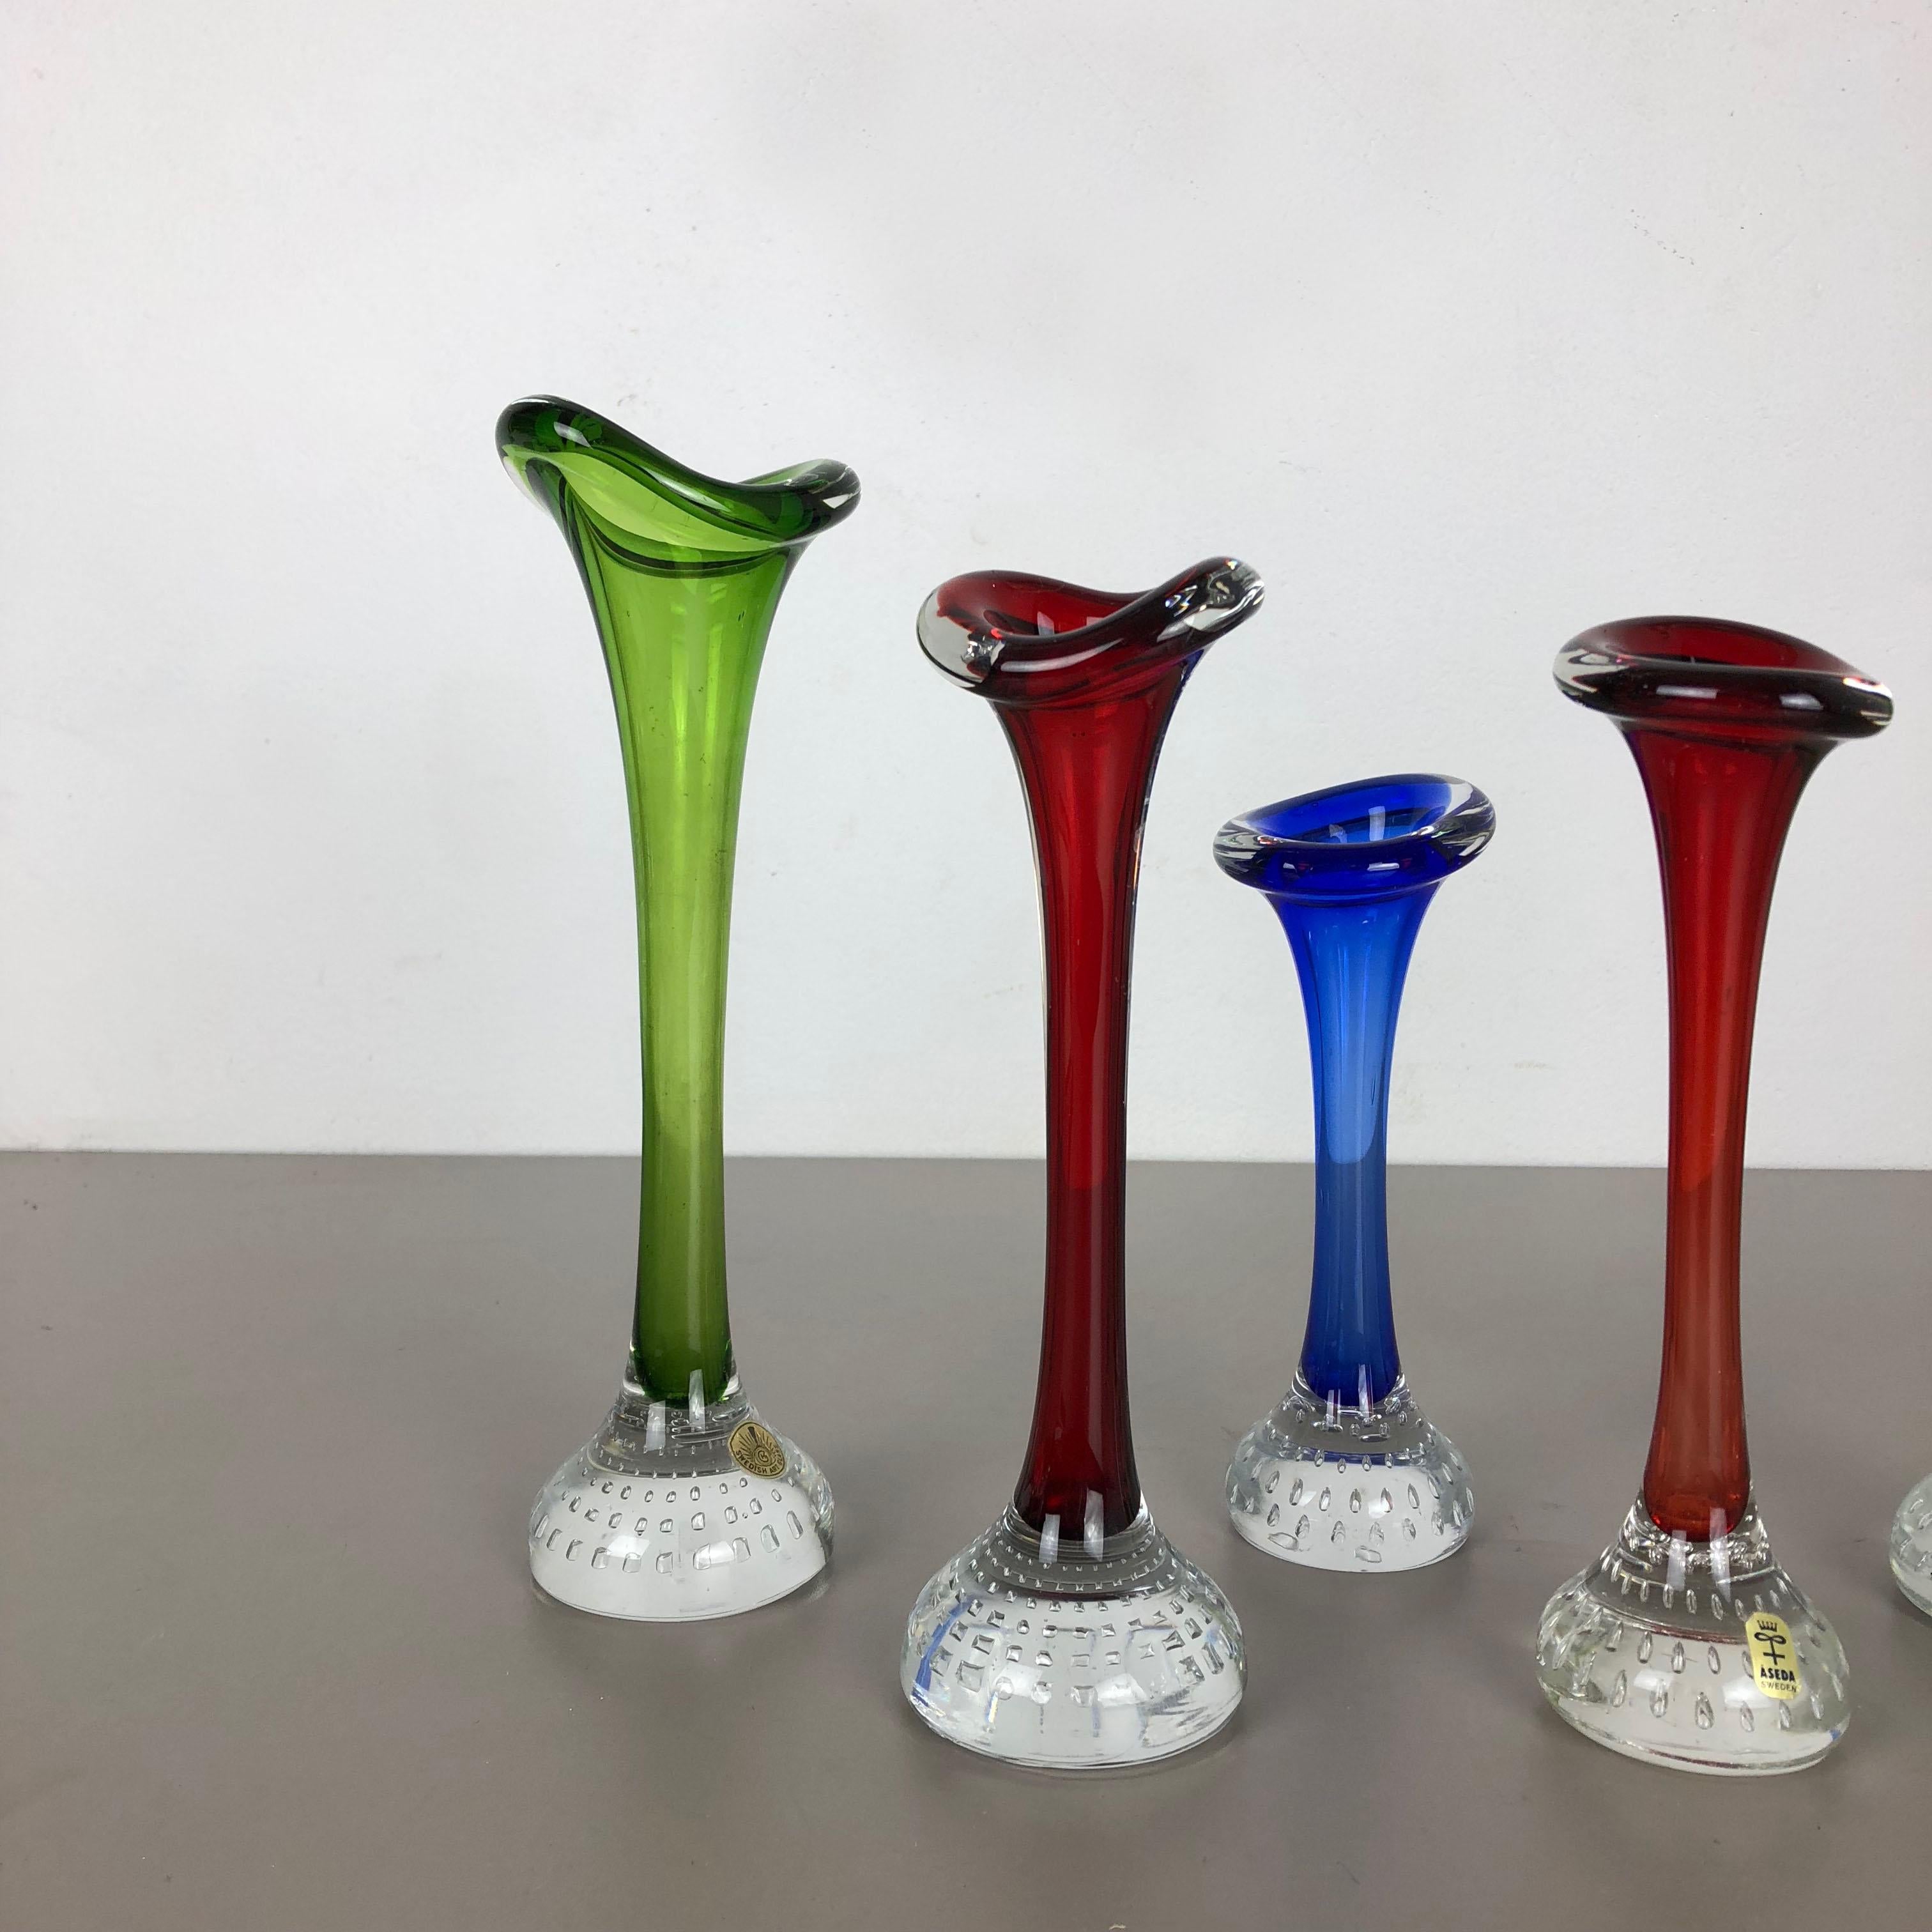 Artikel:

Satz von 5 Glasvasen


Produzent:

ASEDA, Schweden


Design/One:

Bo Borgstrom 



Jahrzehnt:

1970s


Originaler Satz von 5 Vasen der Serie ASEDA Tulip aus den 1970er Jahren. Diese fünf Vasen wurden von Bo Bergstrom